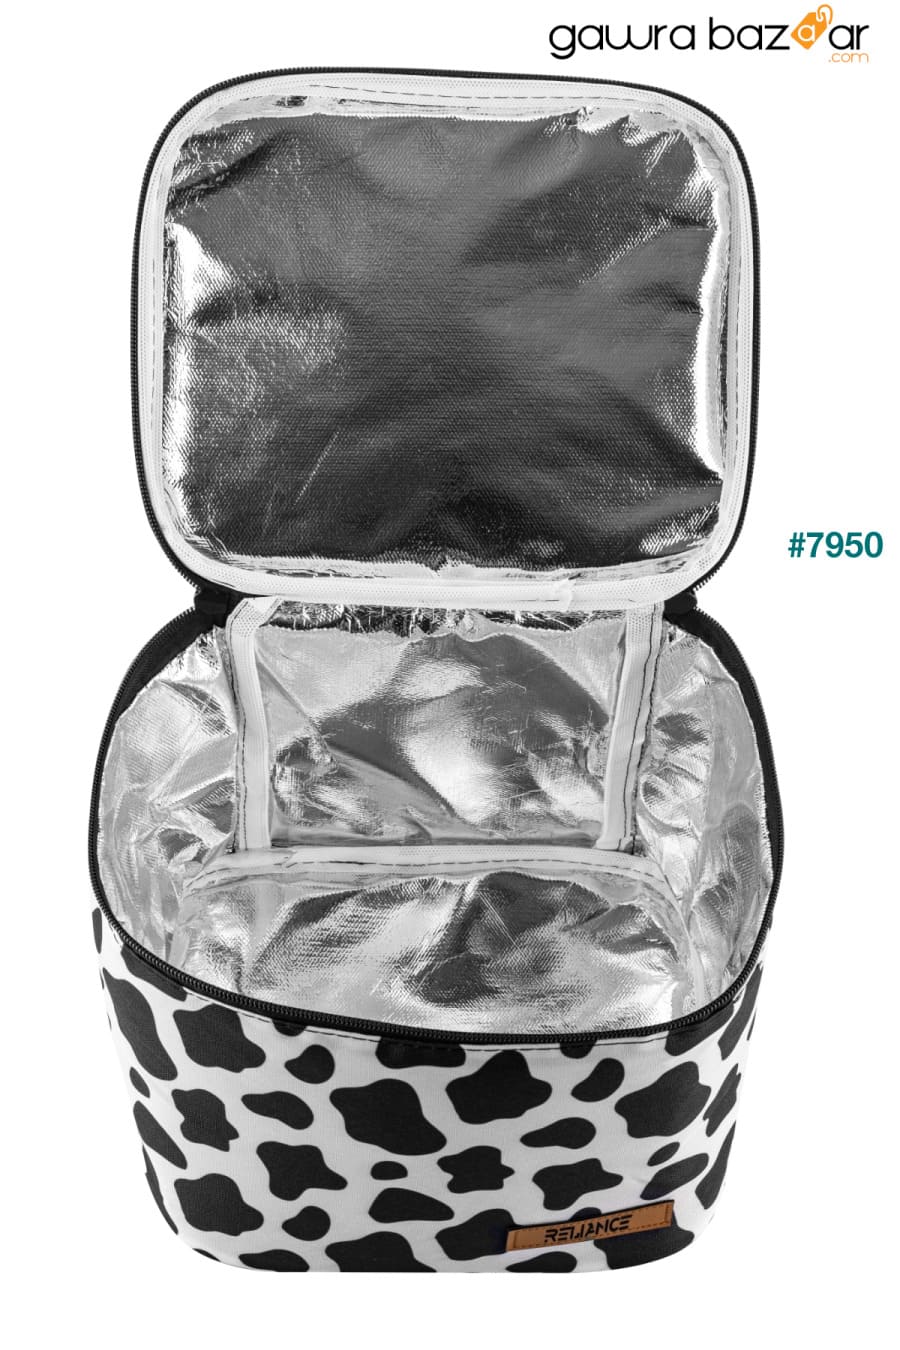 حقيبة نزهة مبردة للتغذية الحرارية سعة 10 لترات - قطعتان من بطاريات الثلج كهدية RELIANCE 2